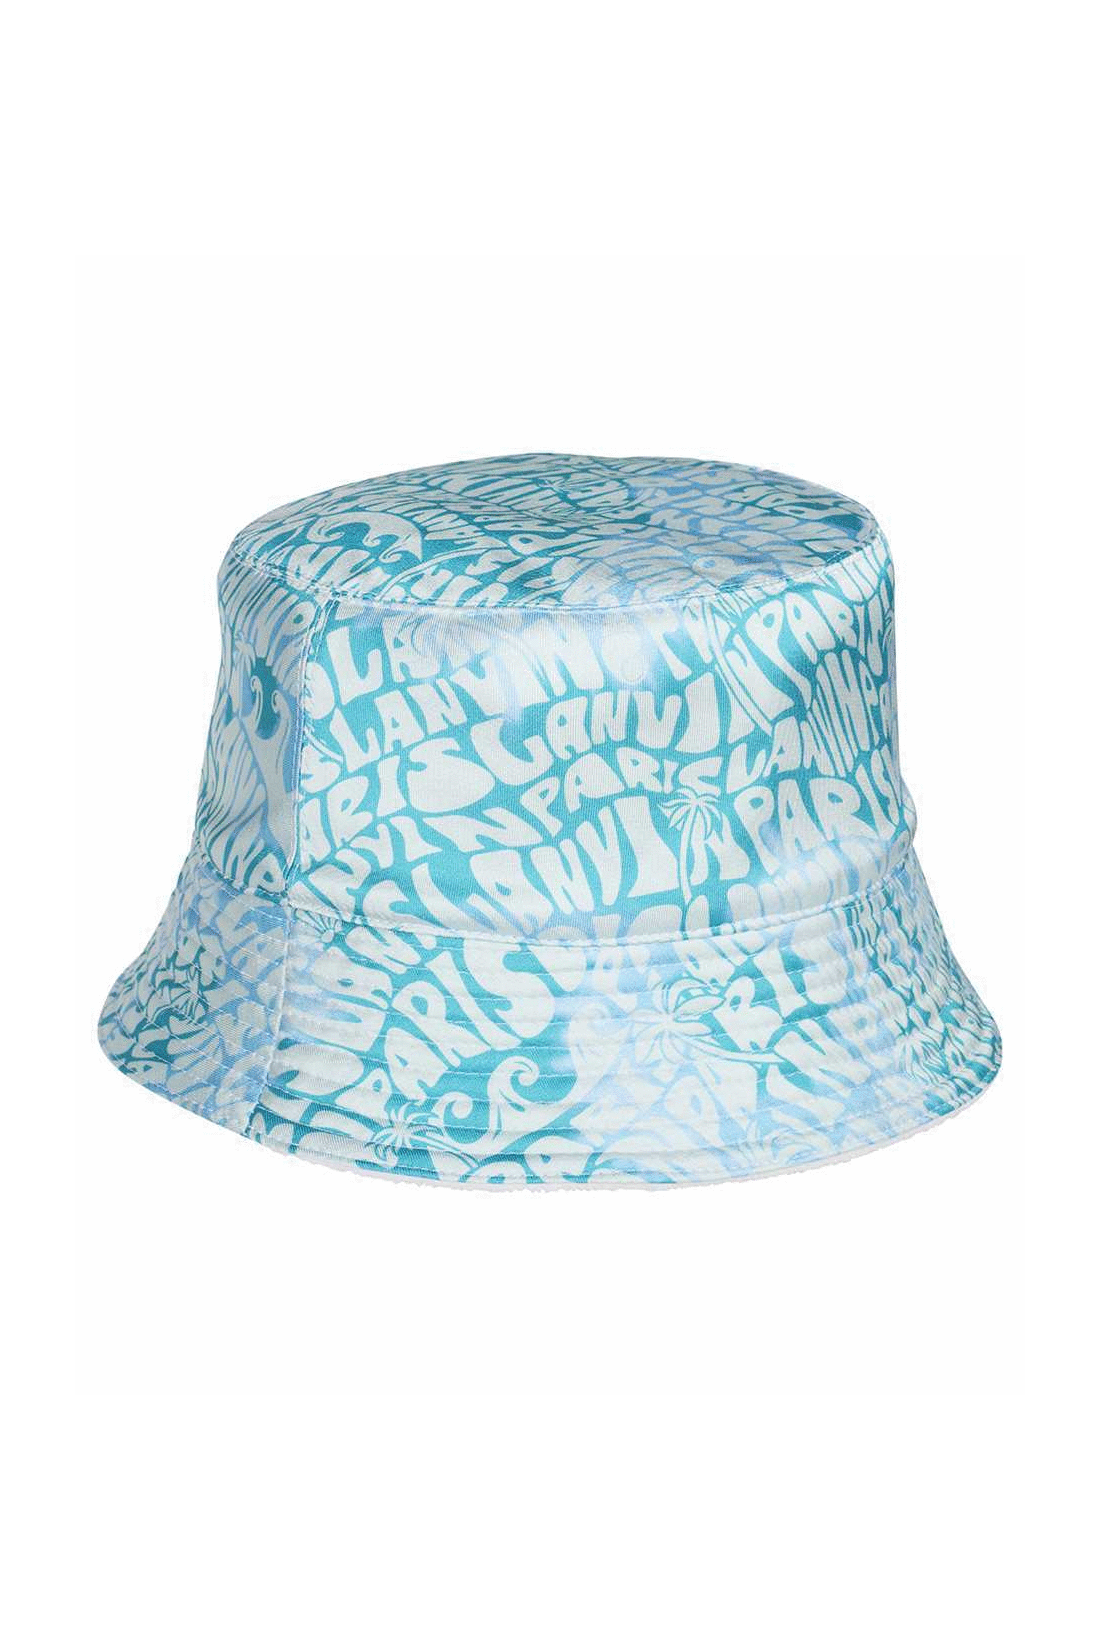 Printed bucket hat